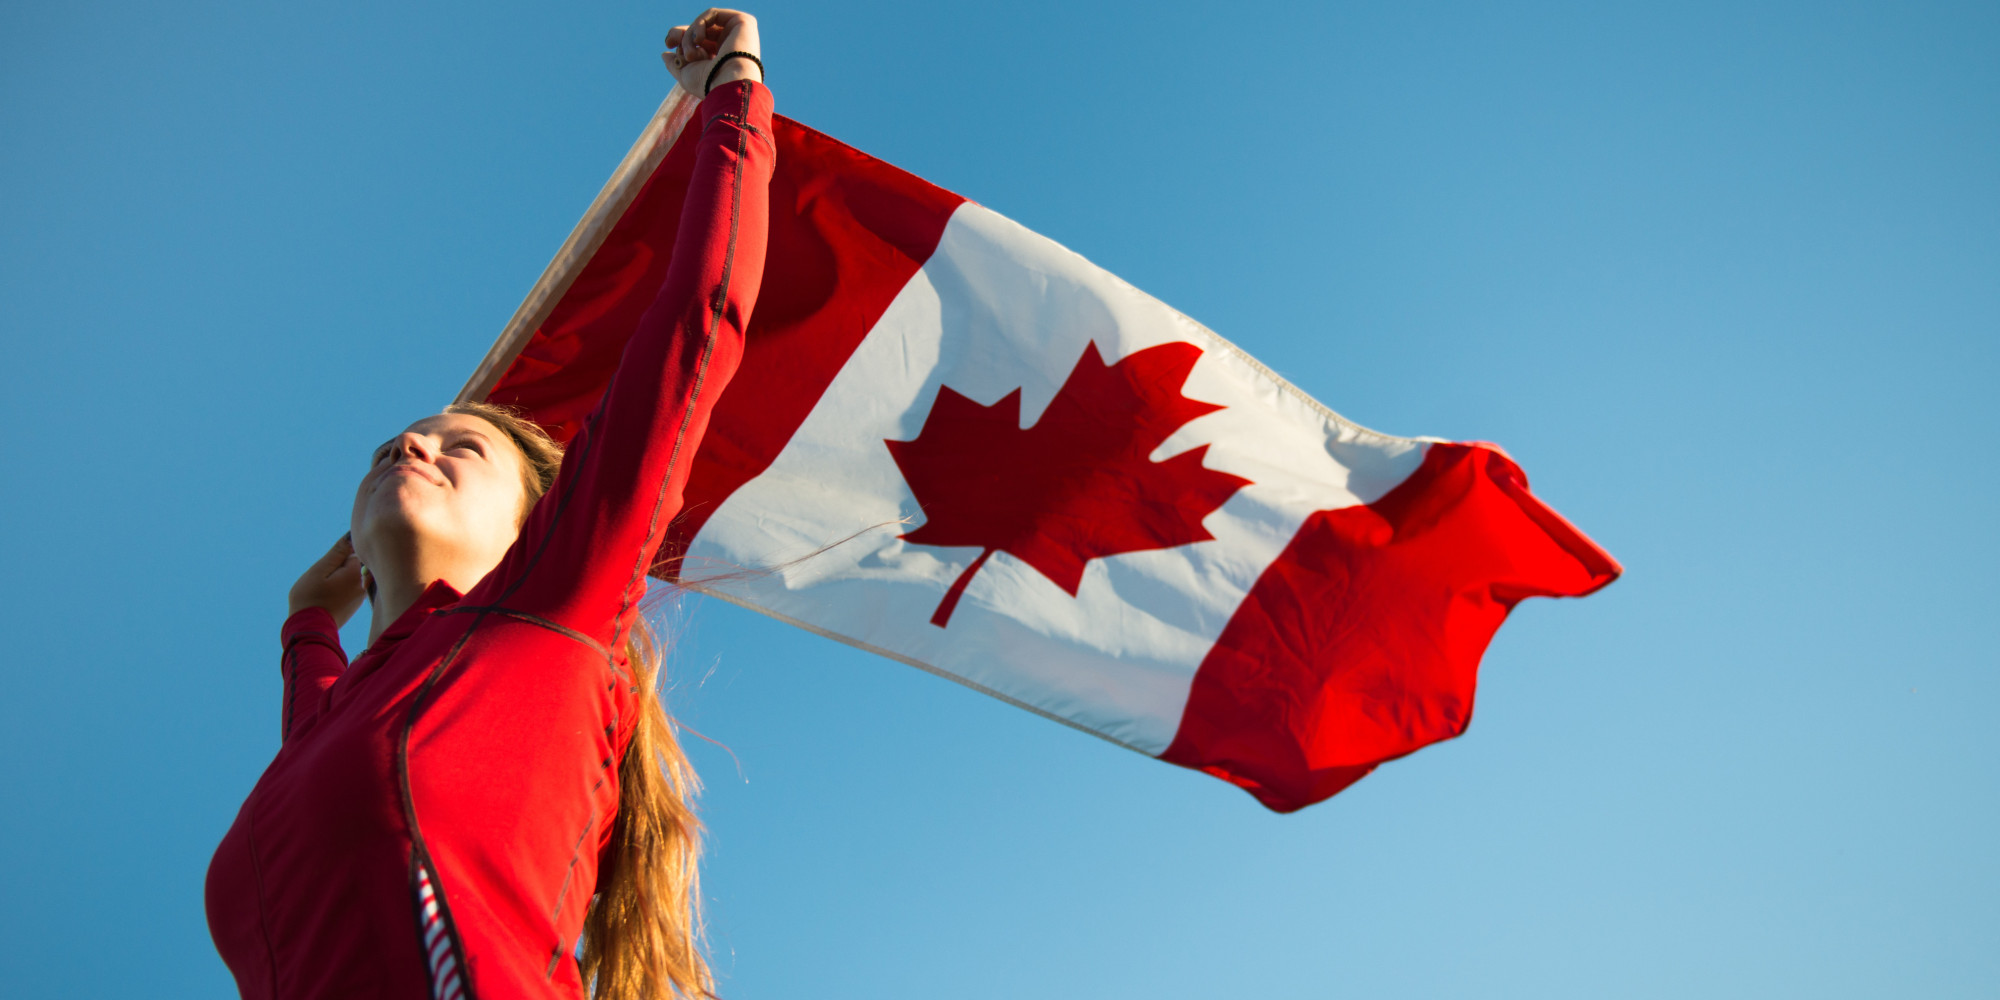 ۴۵ هزار مهاجر در ماه سپتامبر وارد کانادا شدند